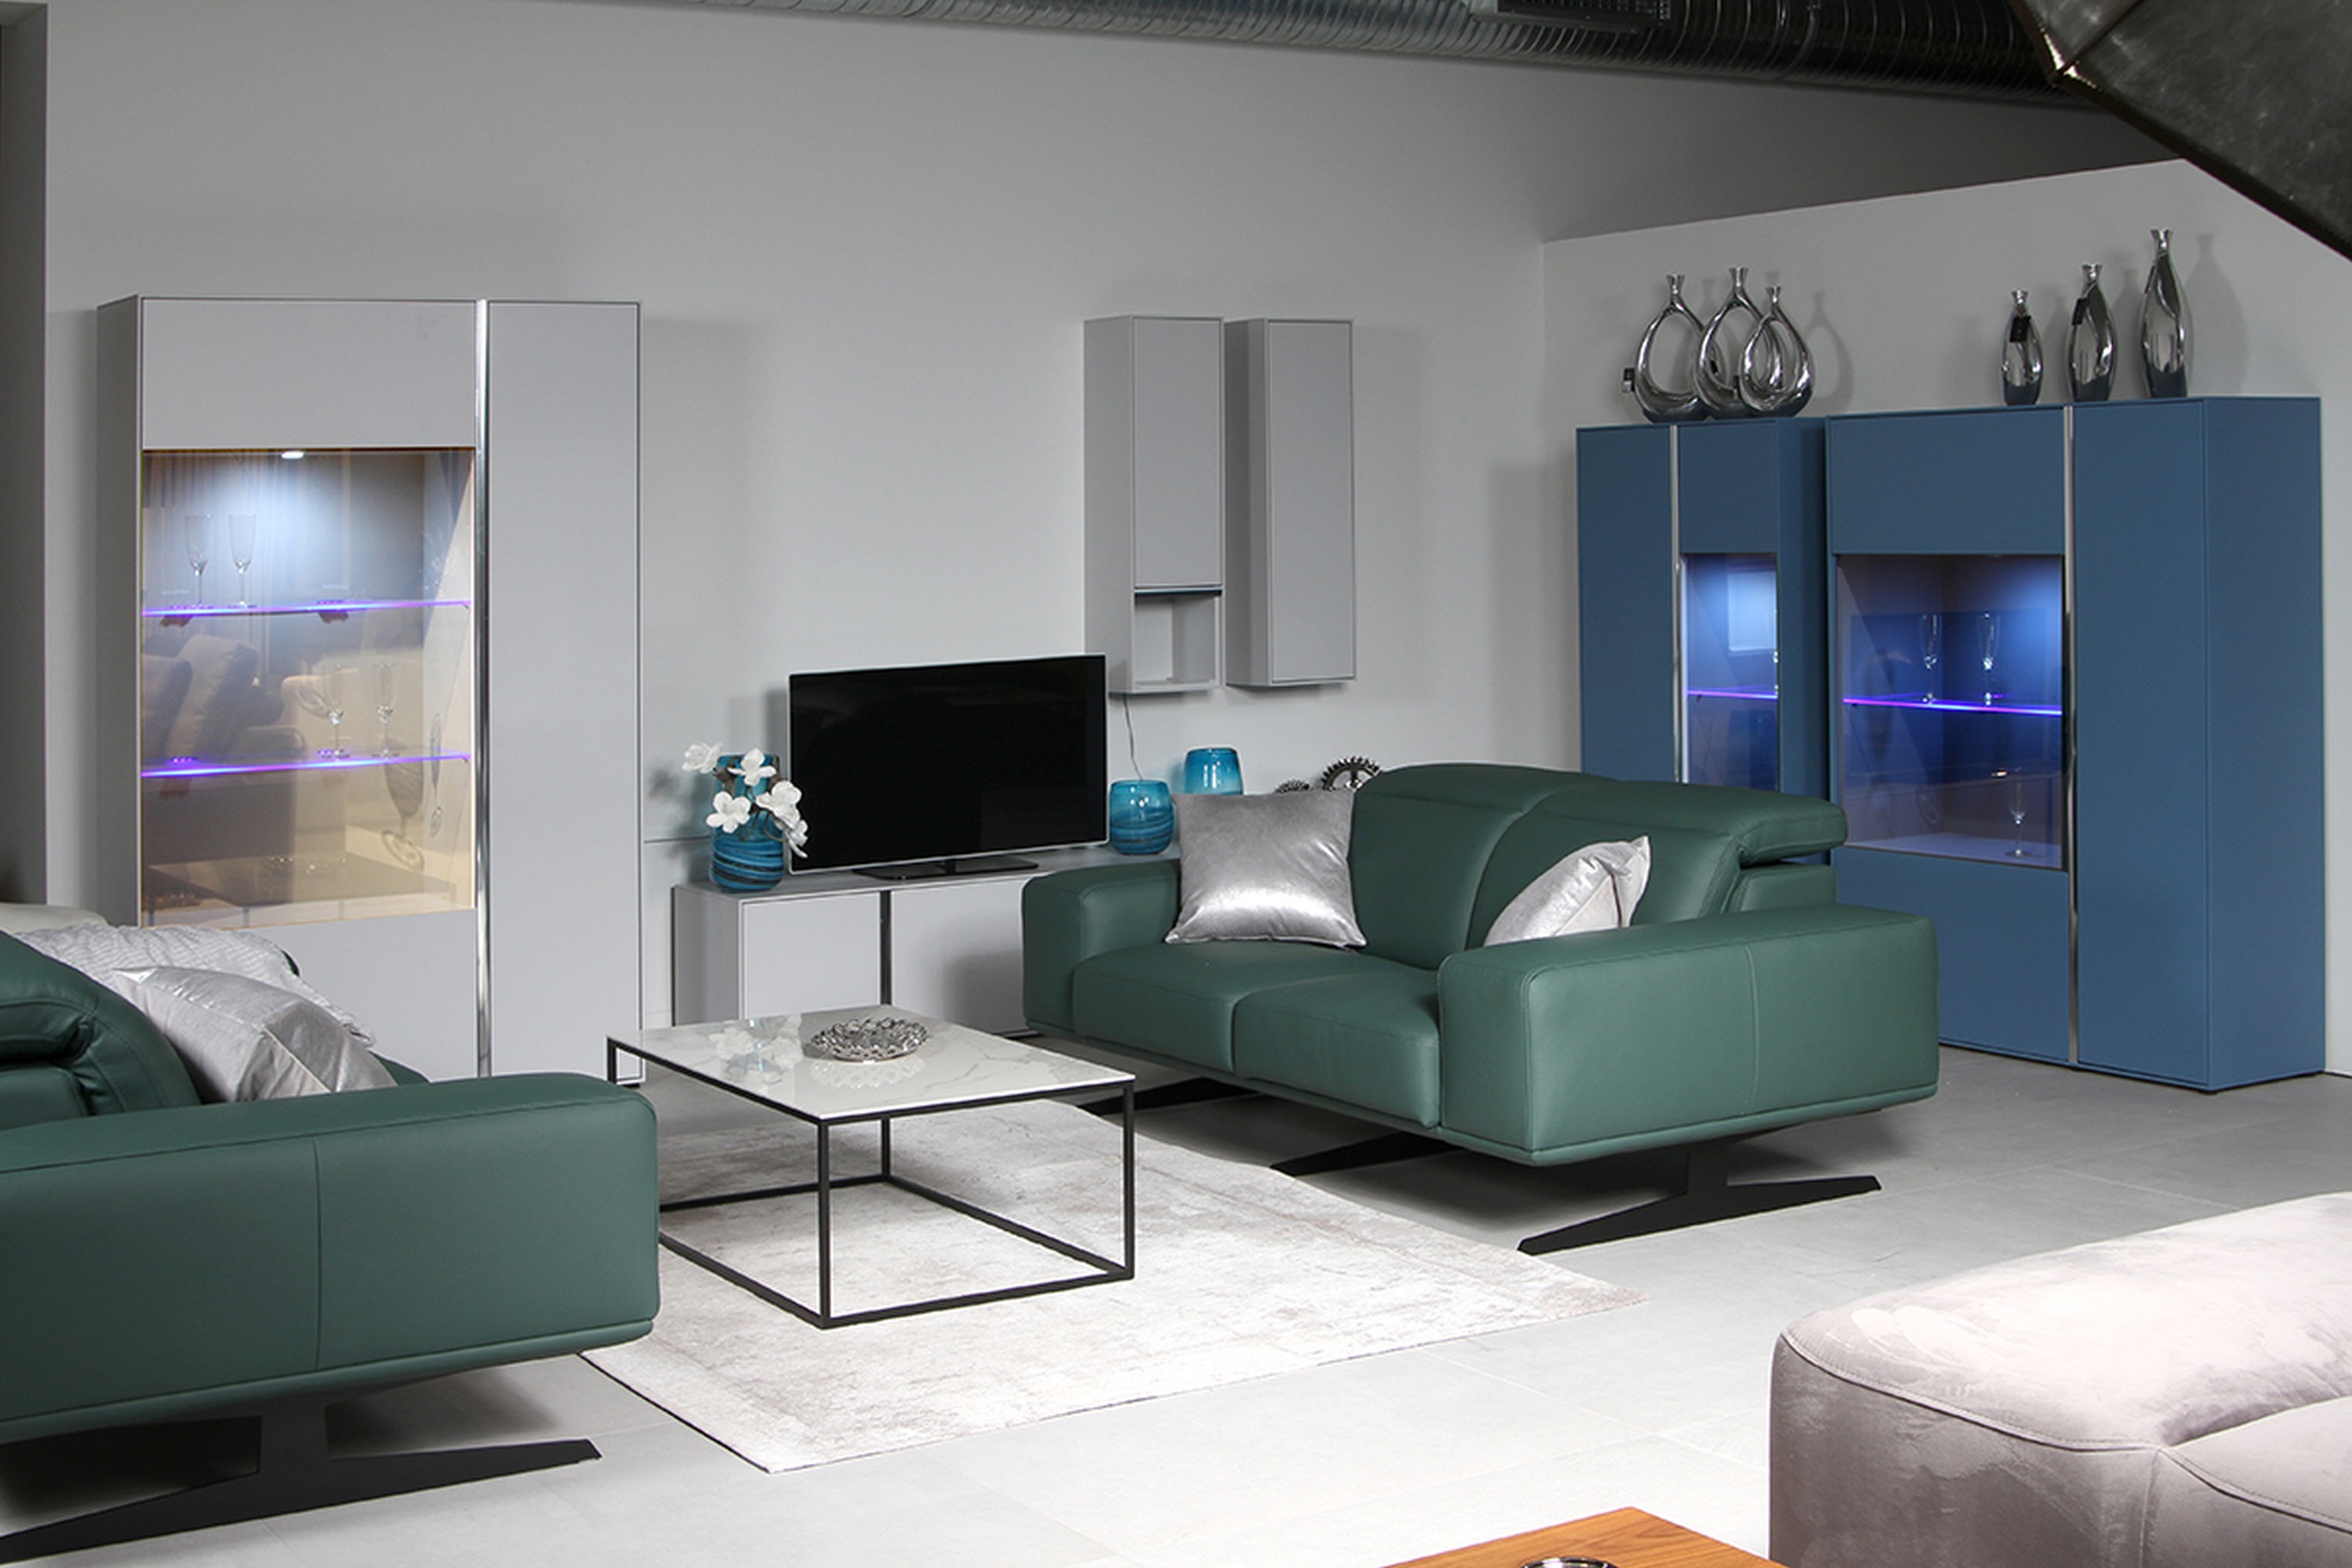 Laguna - aranżacja wnętrza nowoczesnego salonu z szarą i niebieską witryną oraz sofą w kolorze butelkowej zieleni